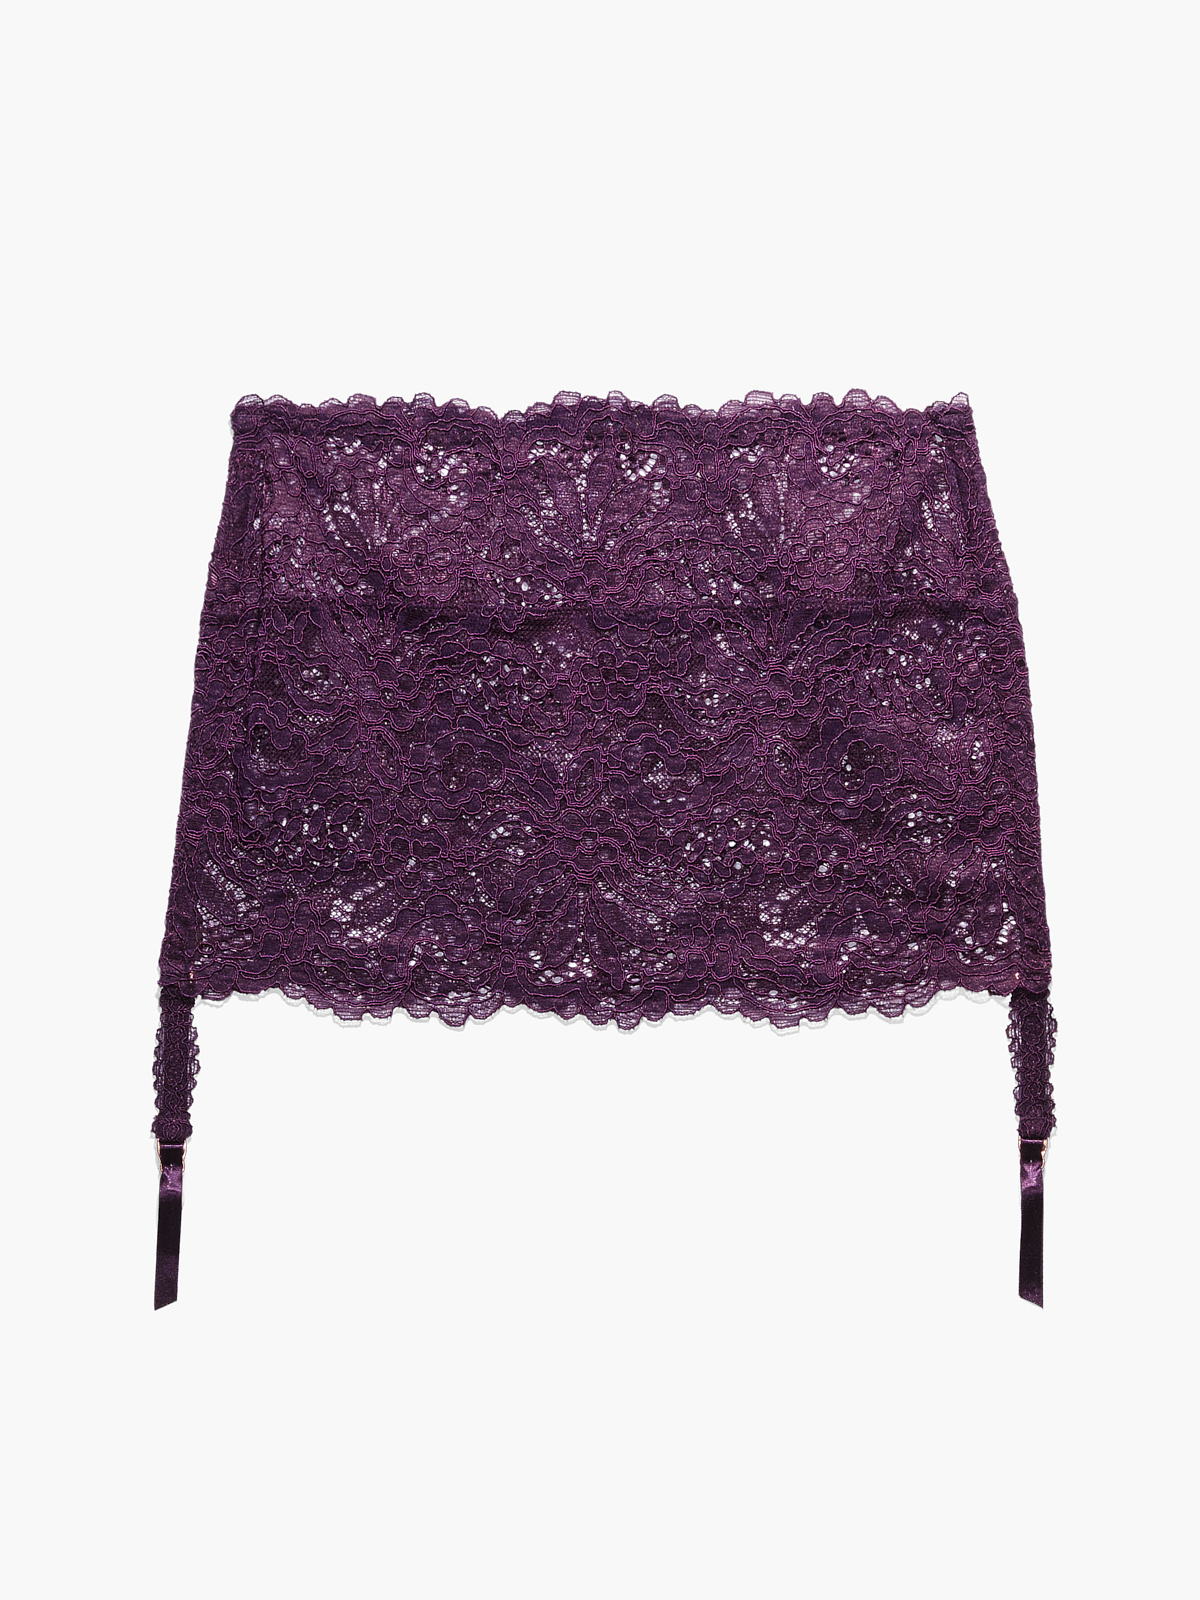 Romantic Corded Lace Garter Skirt